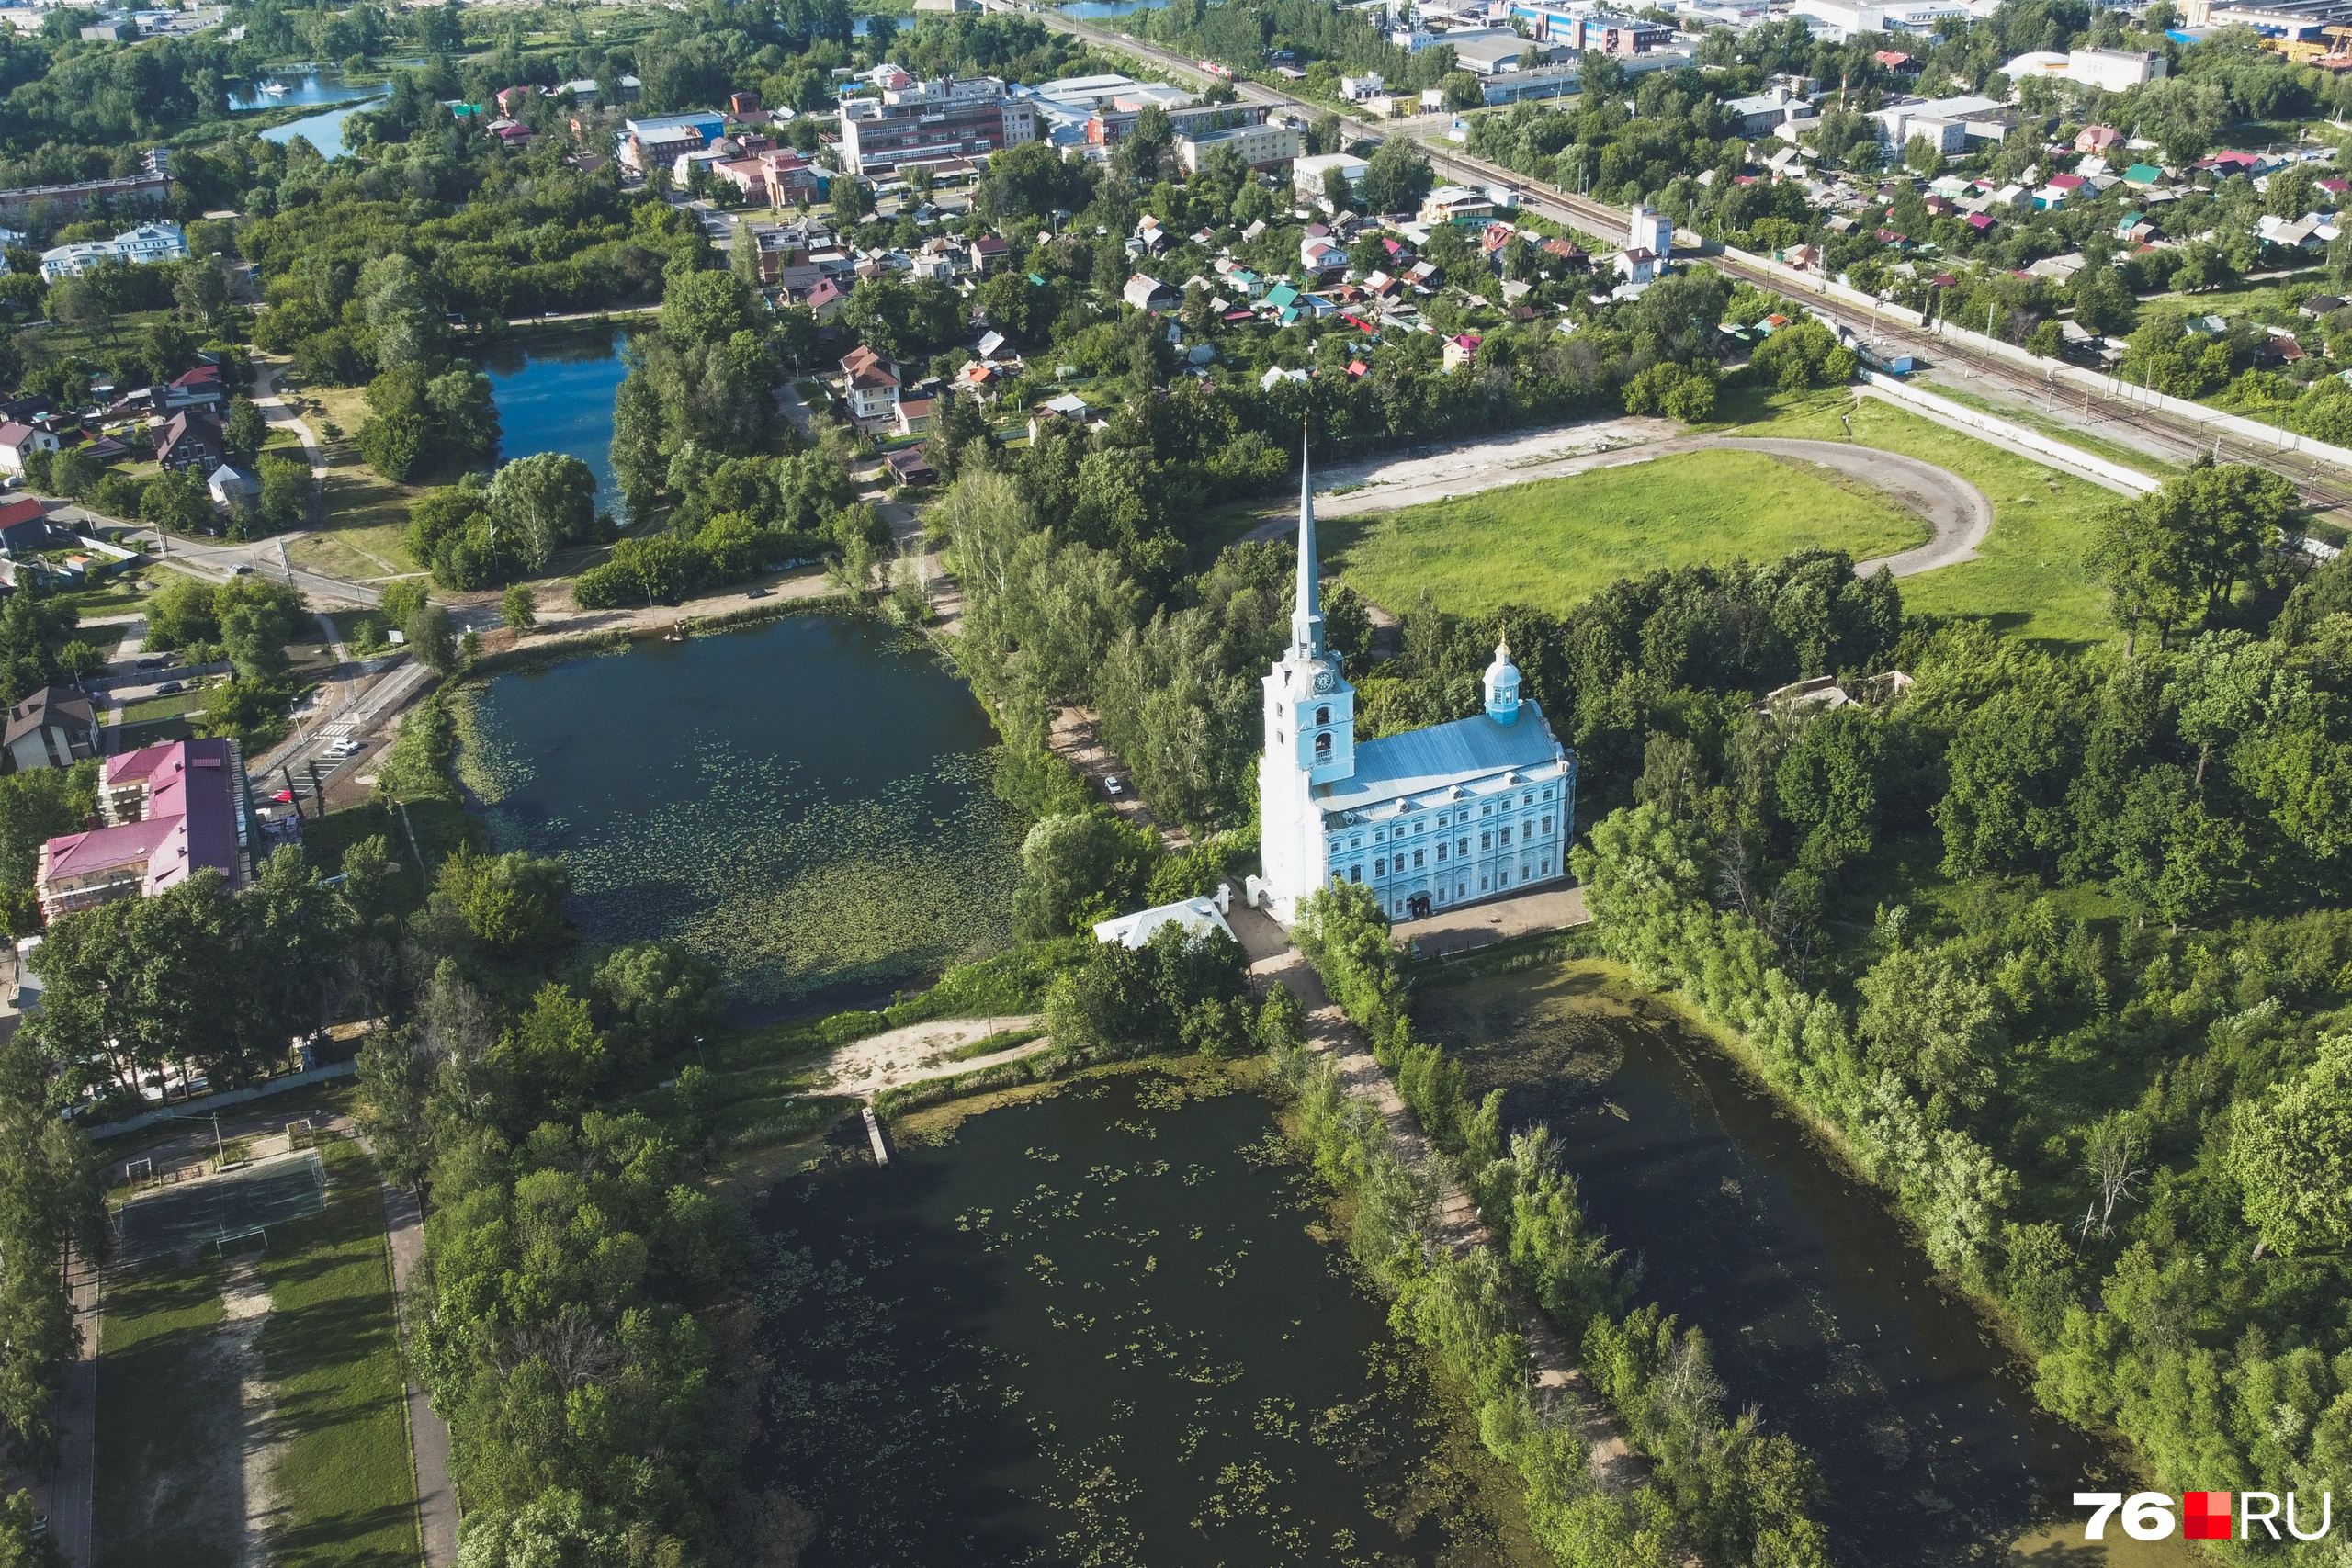 Петропавловский парк — одно из самых живописных мест Ярославля